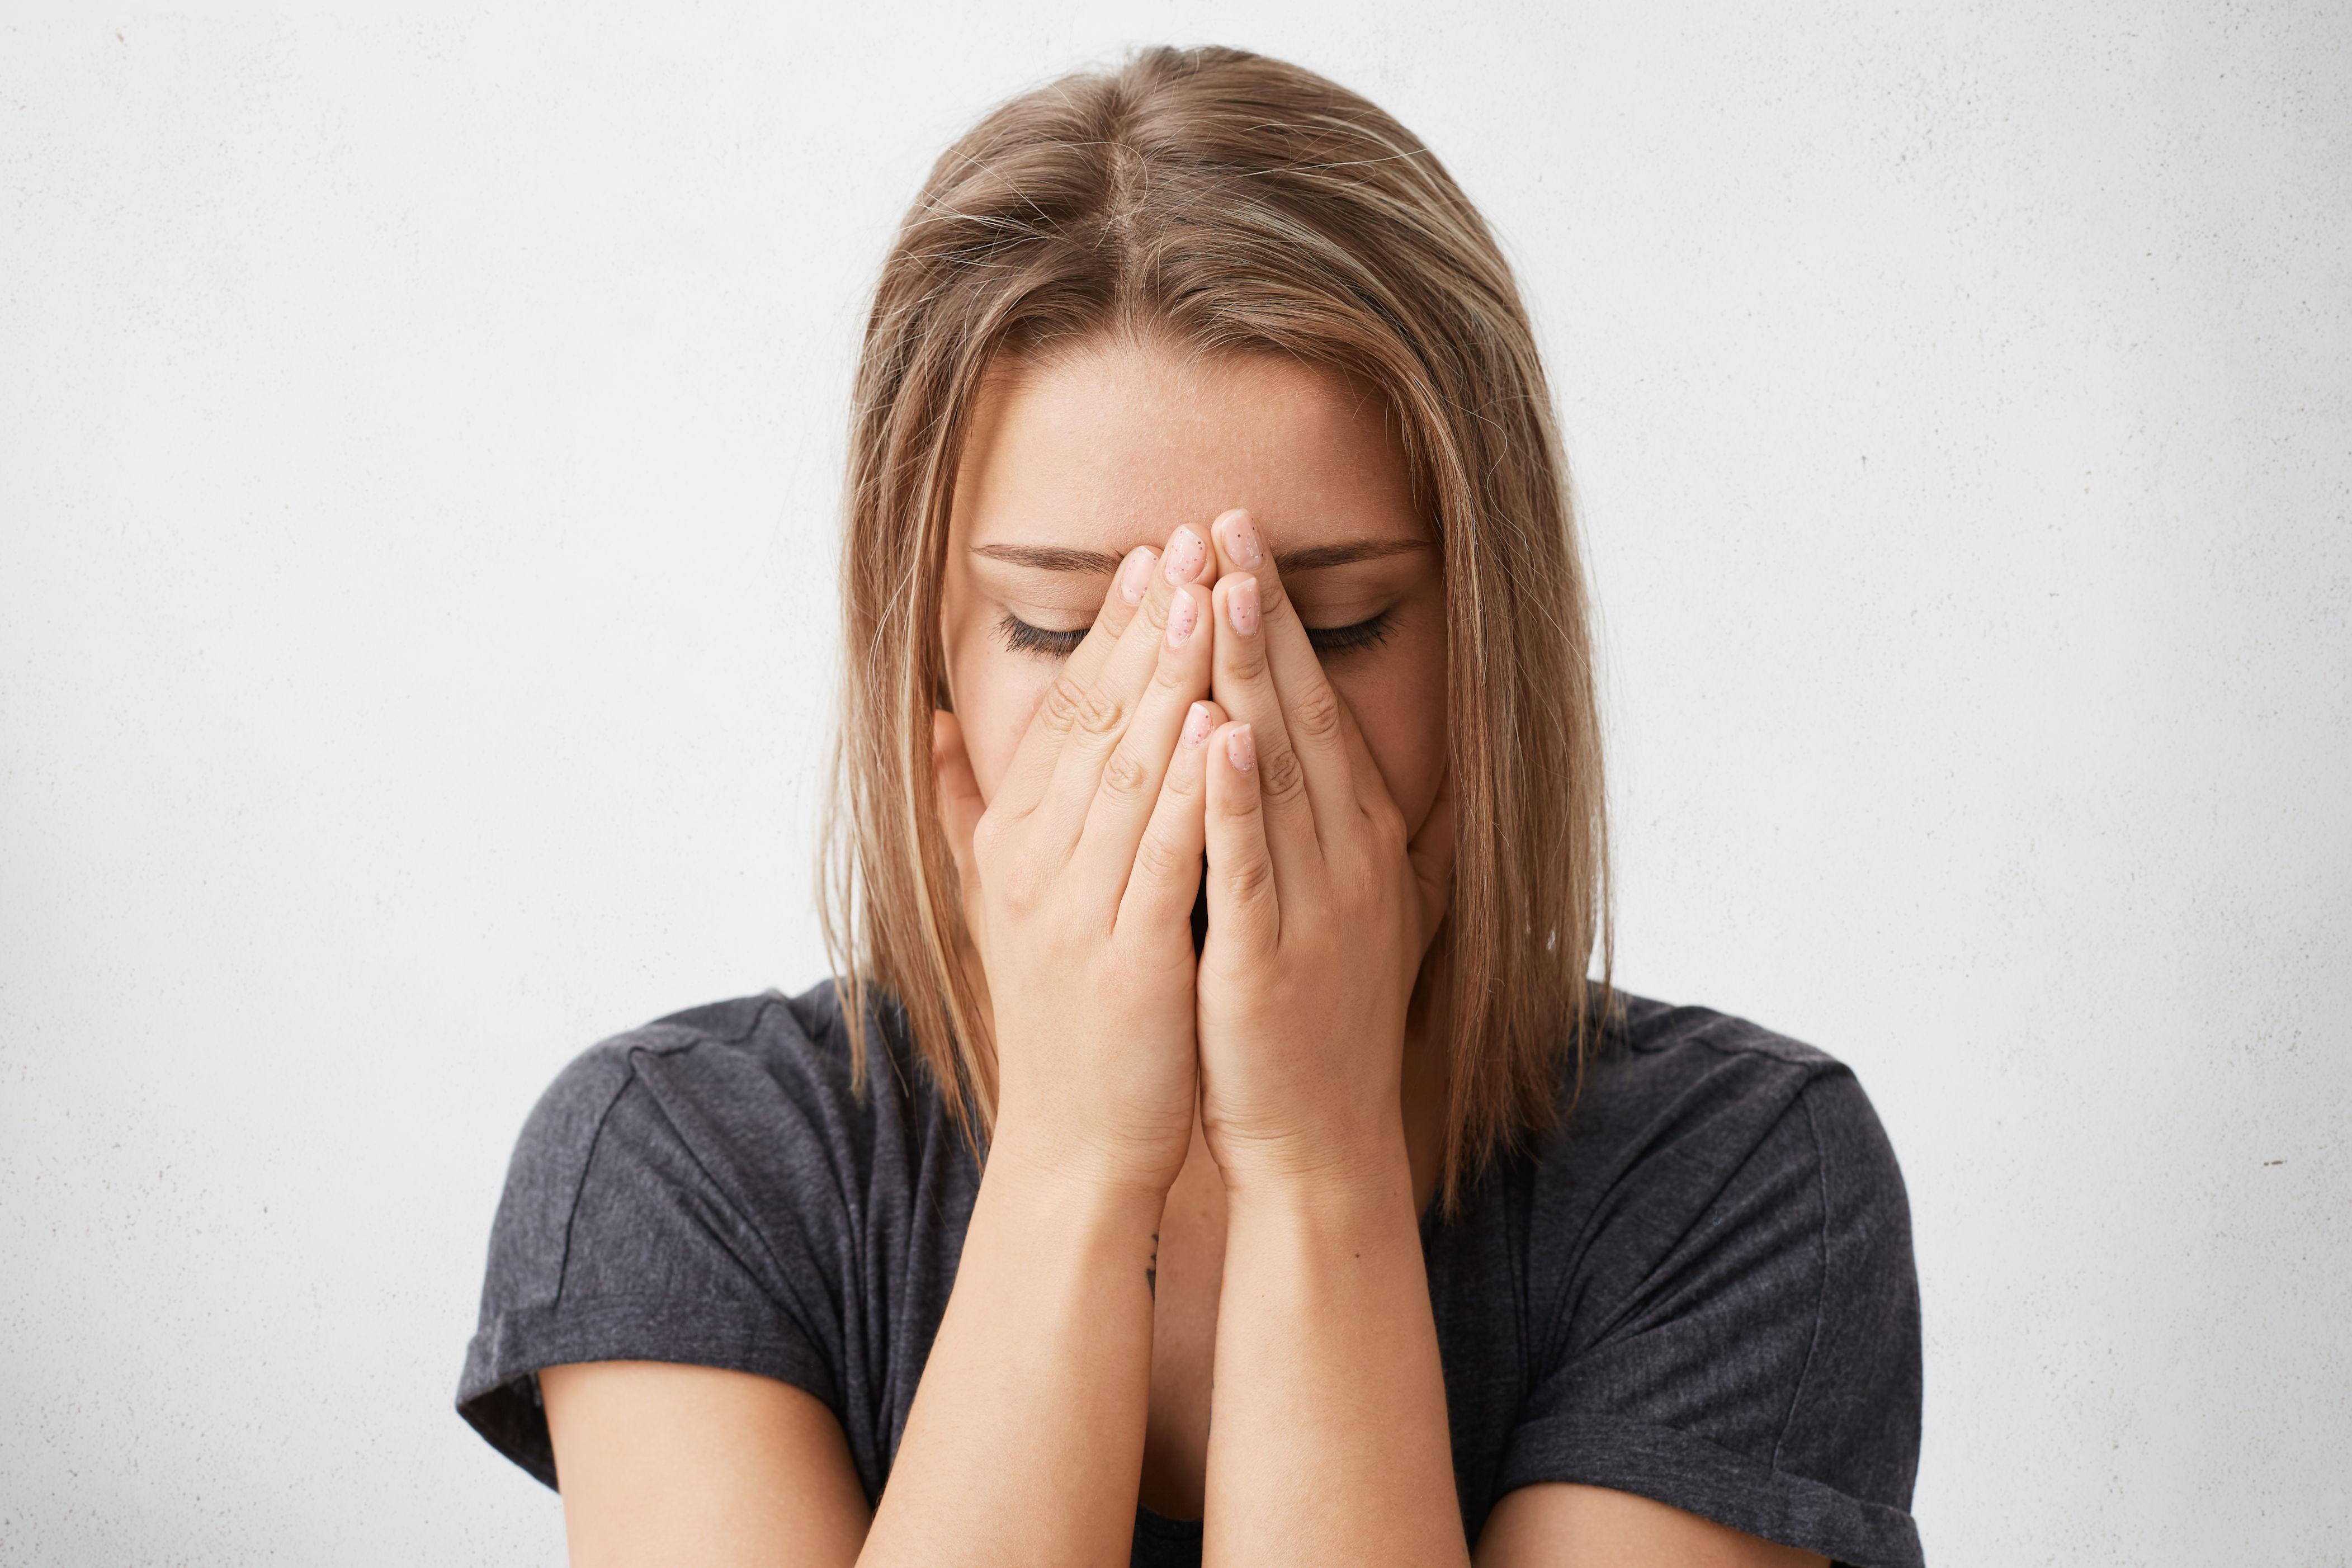 dificuldade de chorar? veja 4 possíveis causas explicadas pela ciência